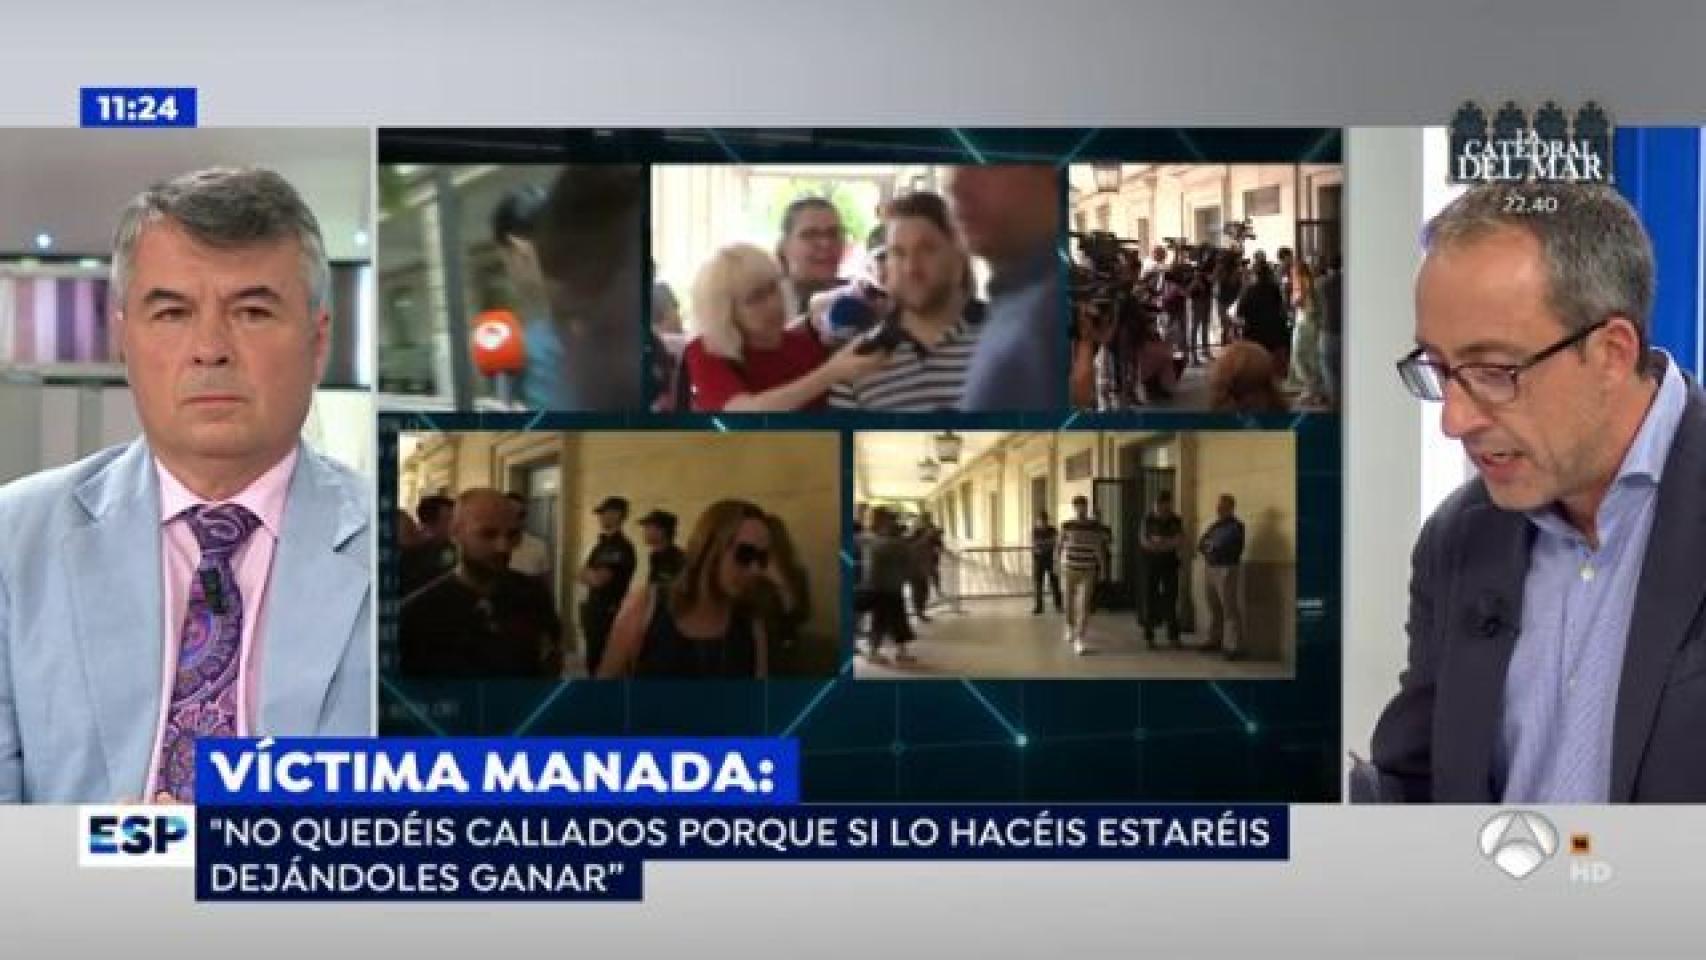 'Espejo Público' no menciona a Ana Rosa al hacerse eco de la carta de la víctima de La Manada